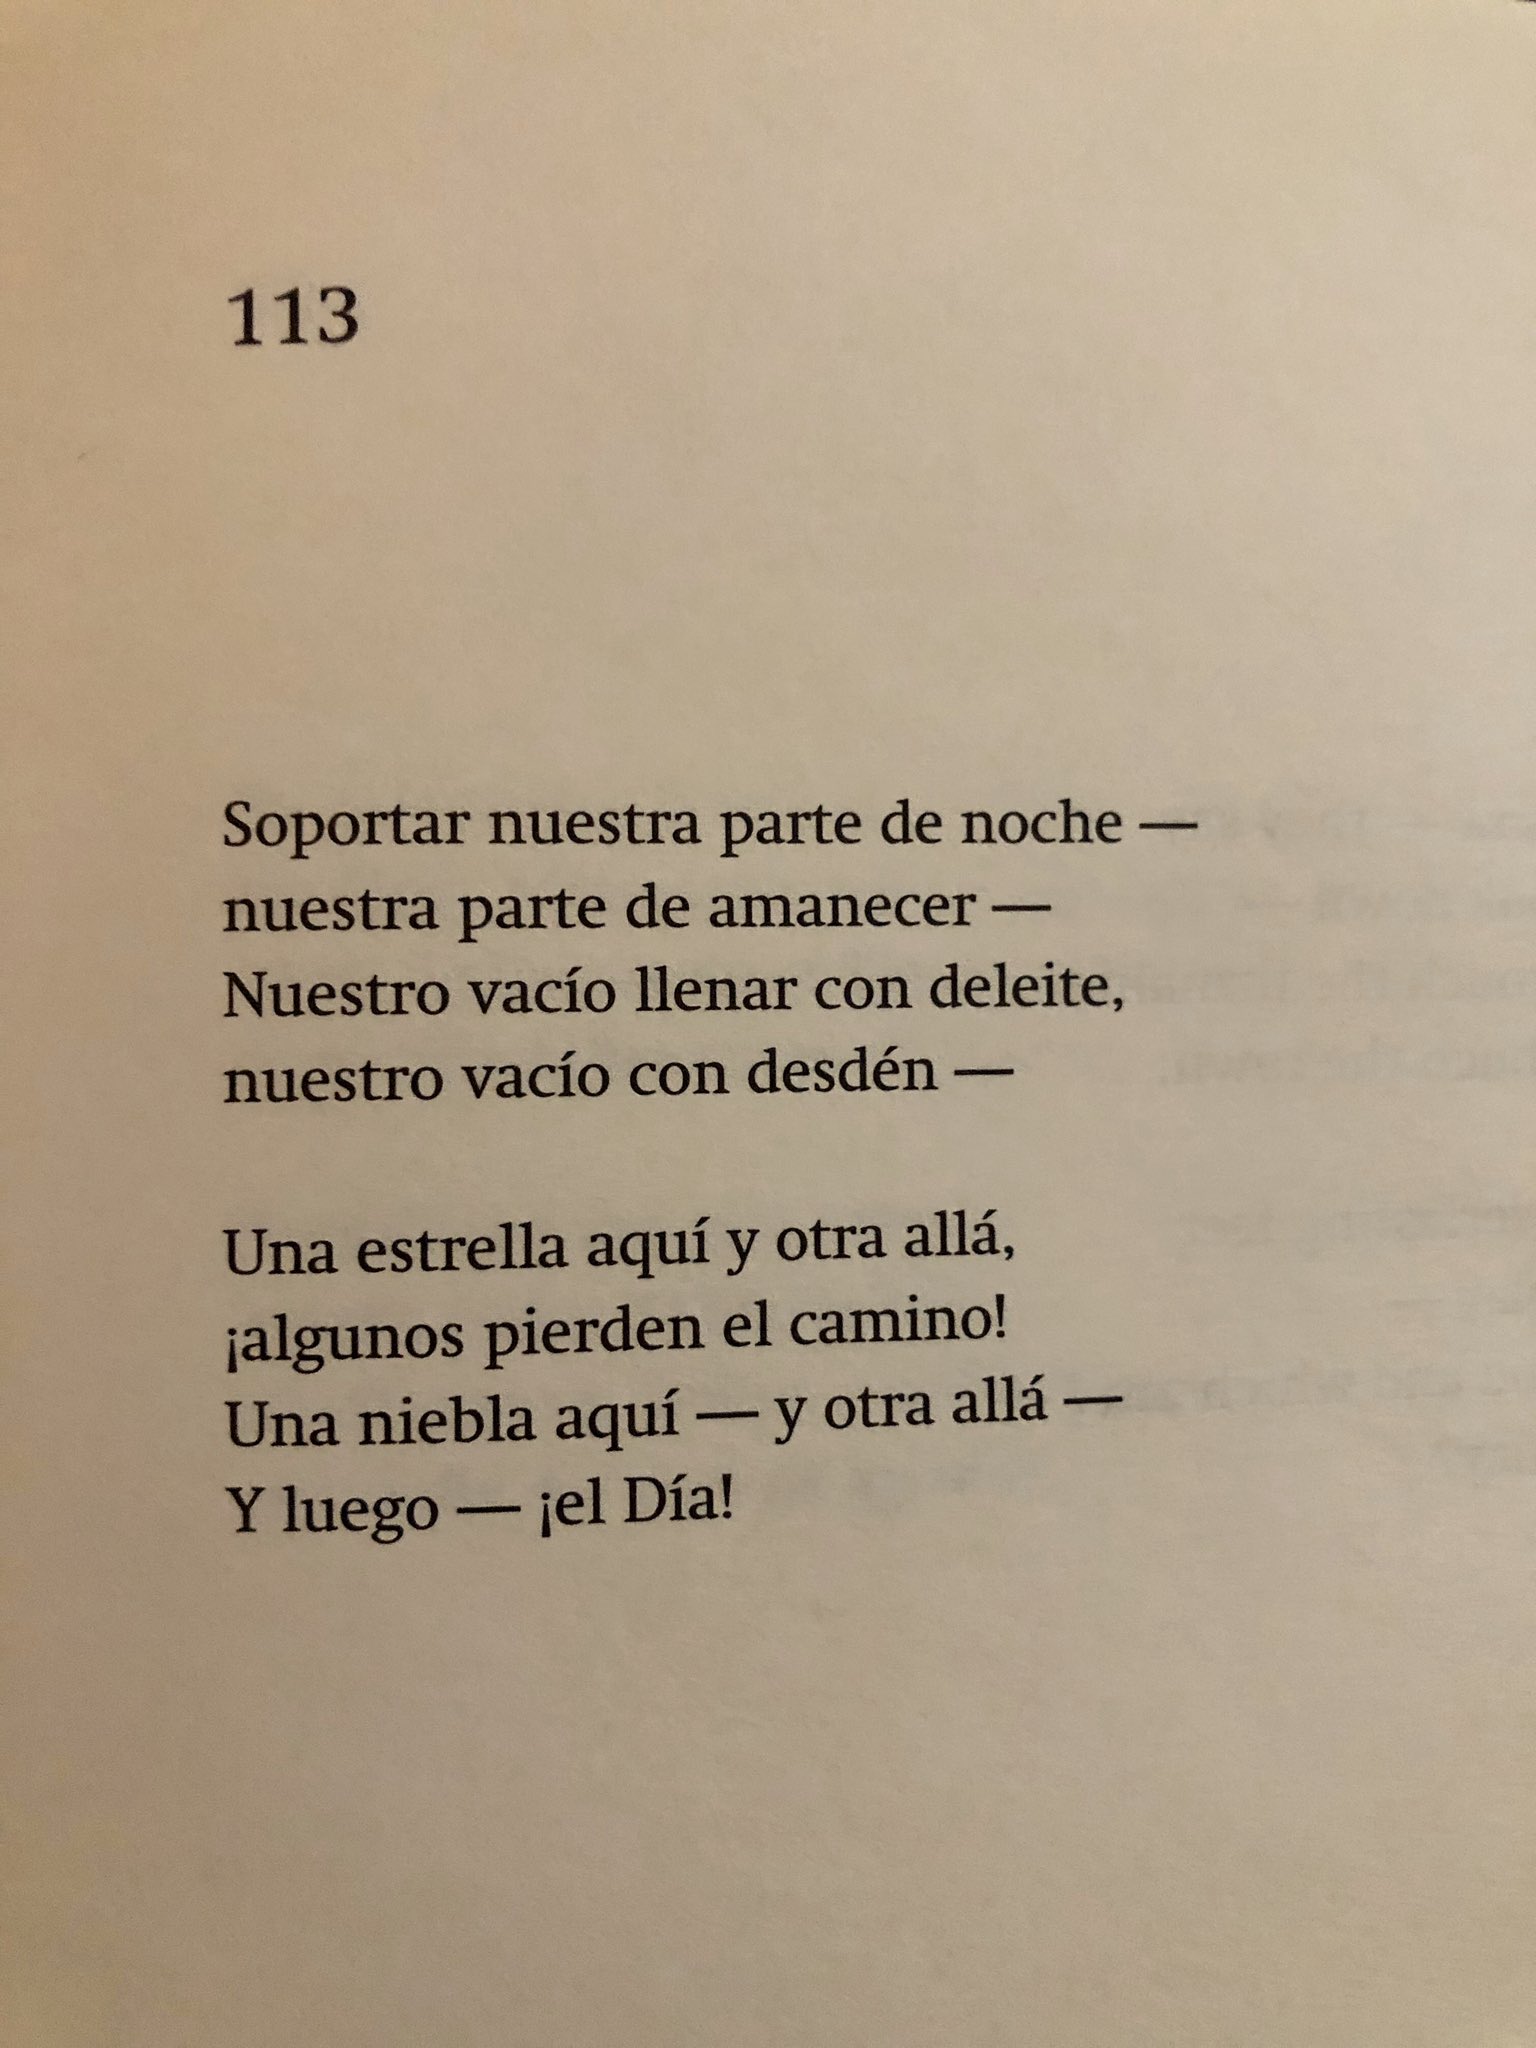 María José Navia on X: O este poema del cual, otro dato nerd, Mariana  Enríquez sacó el título de su última novela: Nuestra parte de noche: “Our  share of night to bear —/